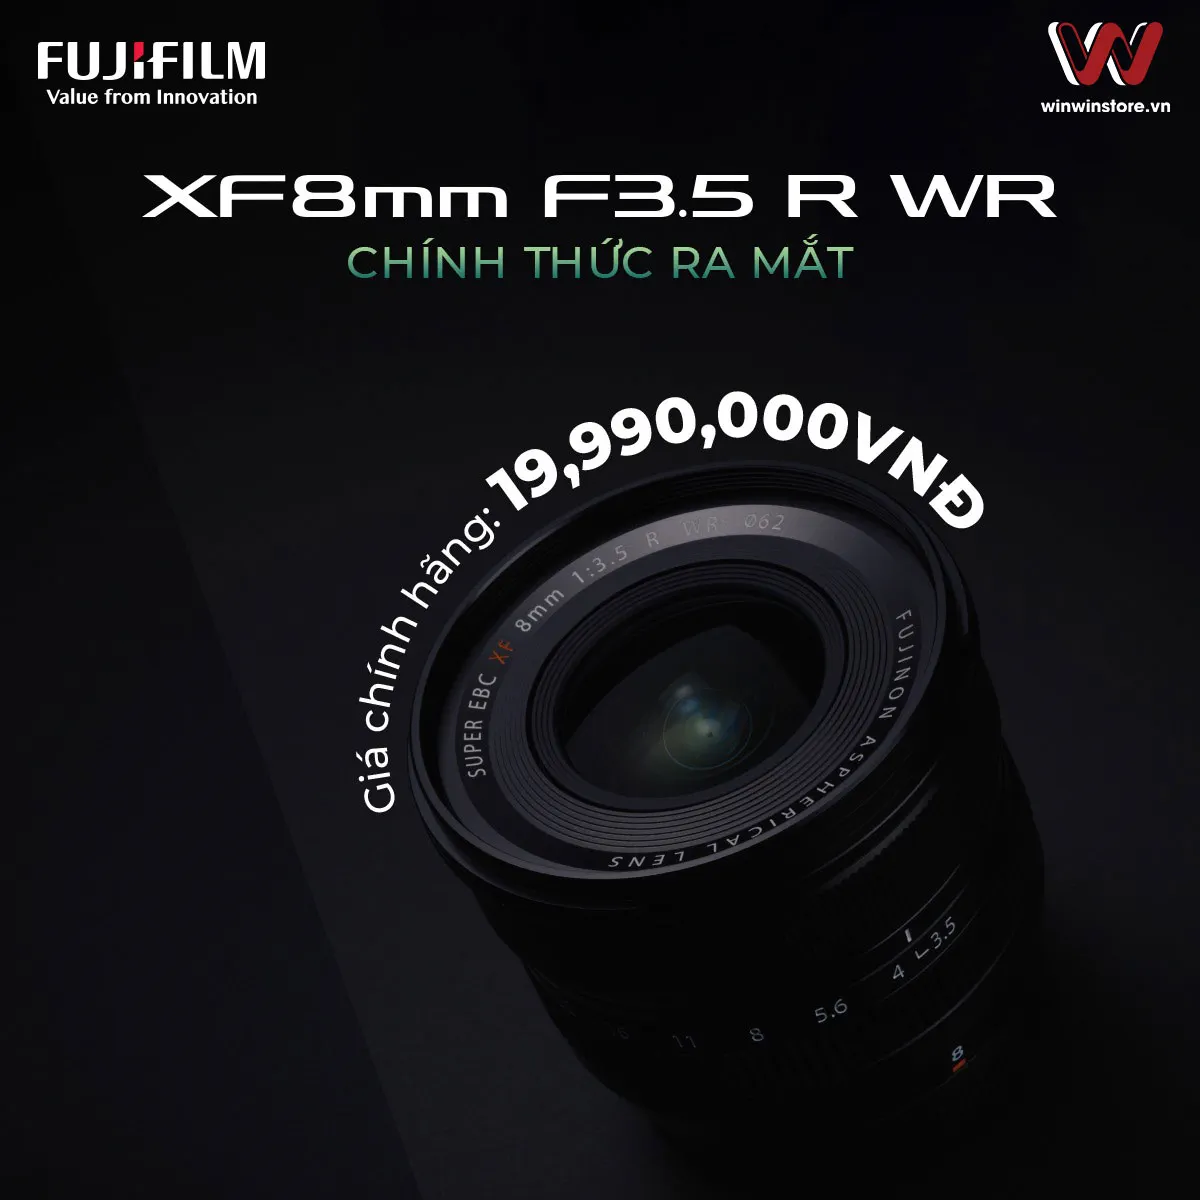 Trên tay nhanh ống kính Fujifilm XF 8mm F3.5 R WR: Nhỏ gọn, tiêu cự siêu rộng ấn tượng, giá 20 triệu